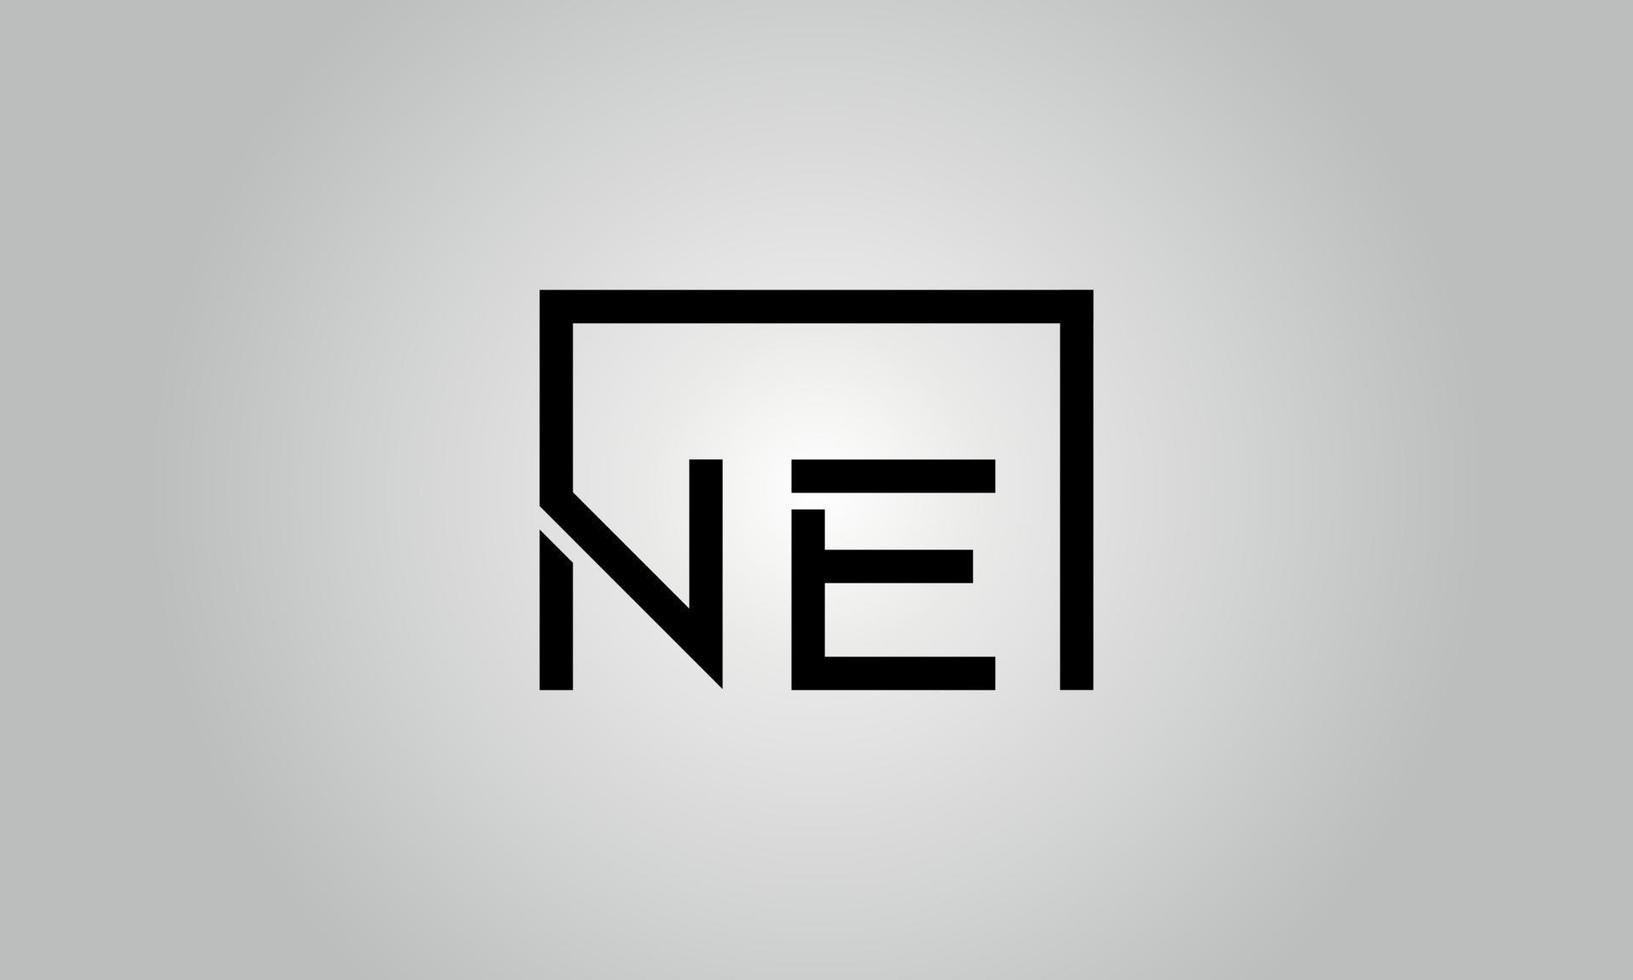 création de logo lettre ne. logo ne avec forme carrée dans le modèle de vecteur gratuit de vecteur de couleurs noires.